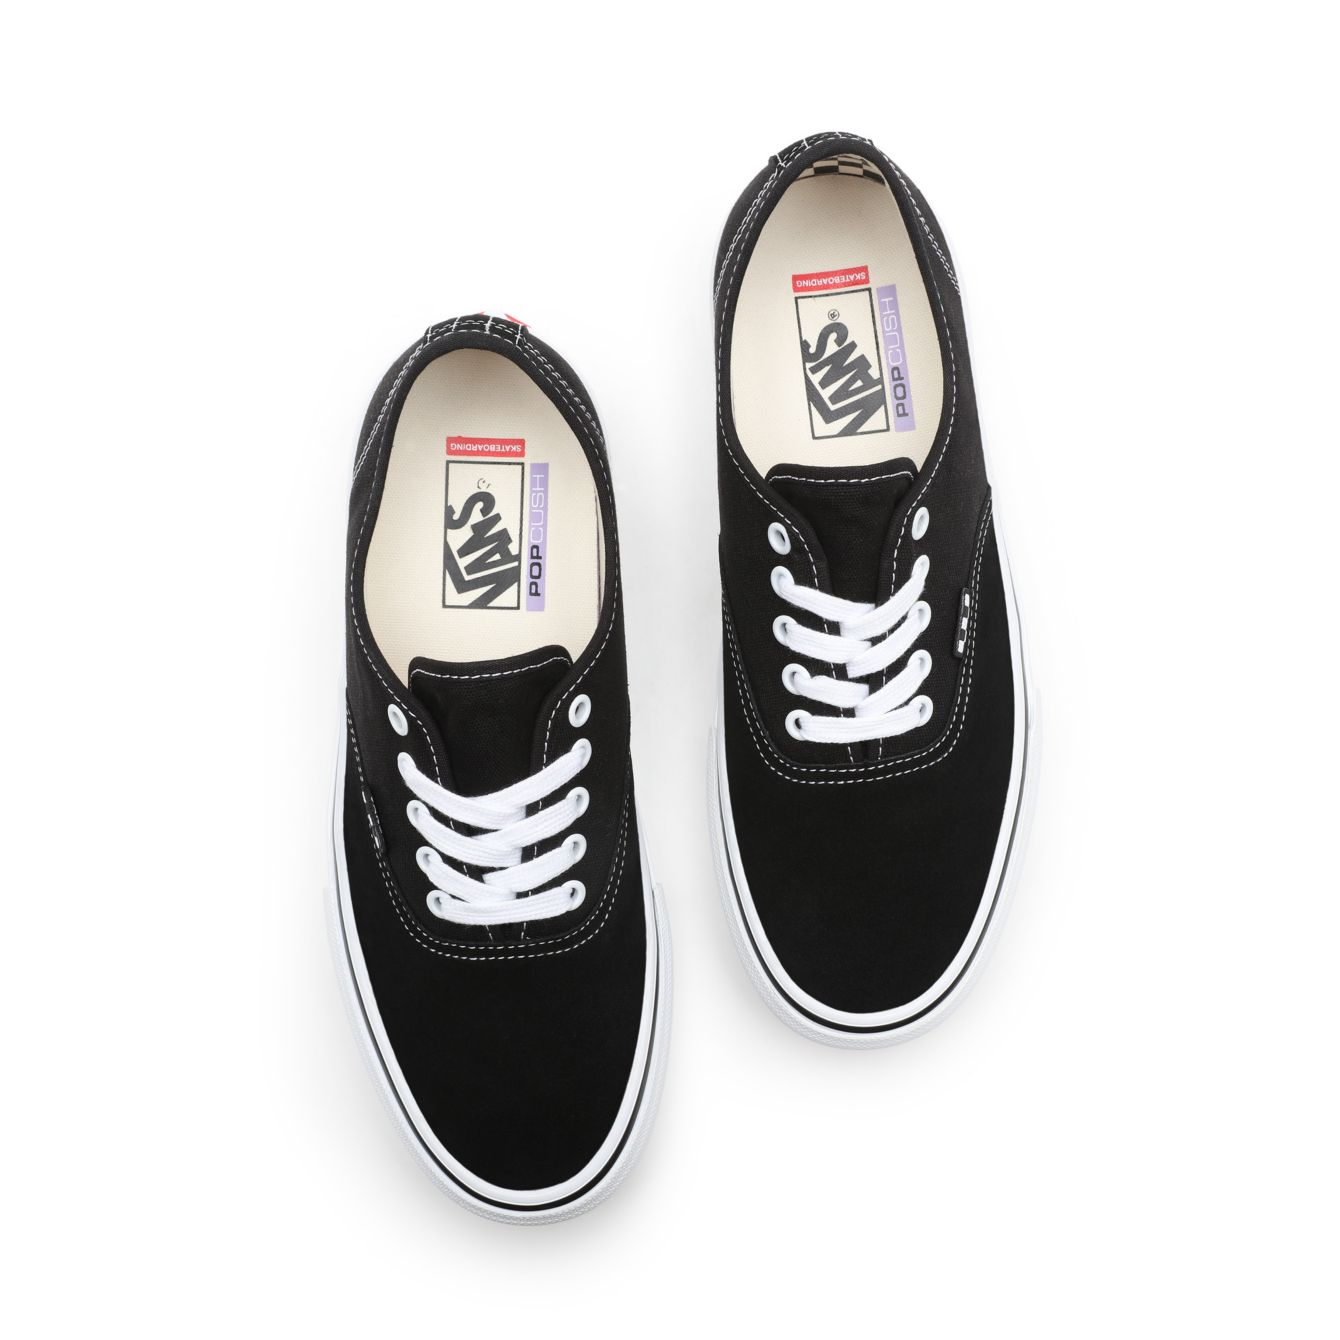 Vans Skate Authentic Shoes - Black/White